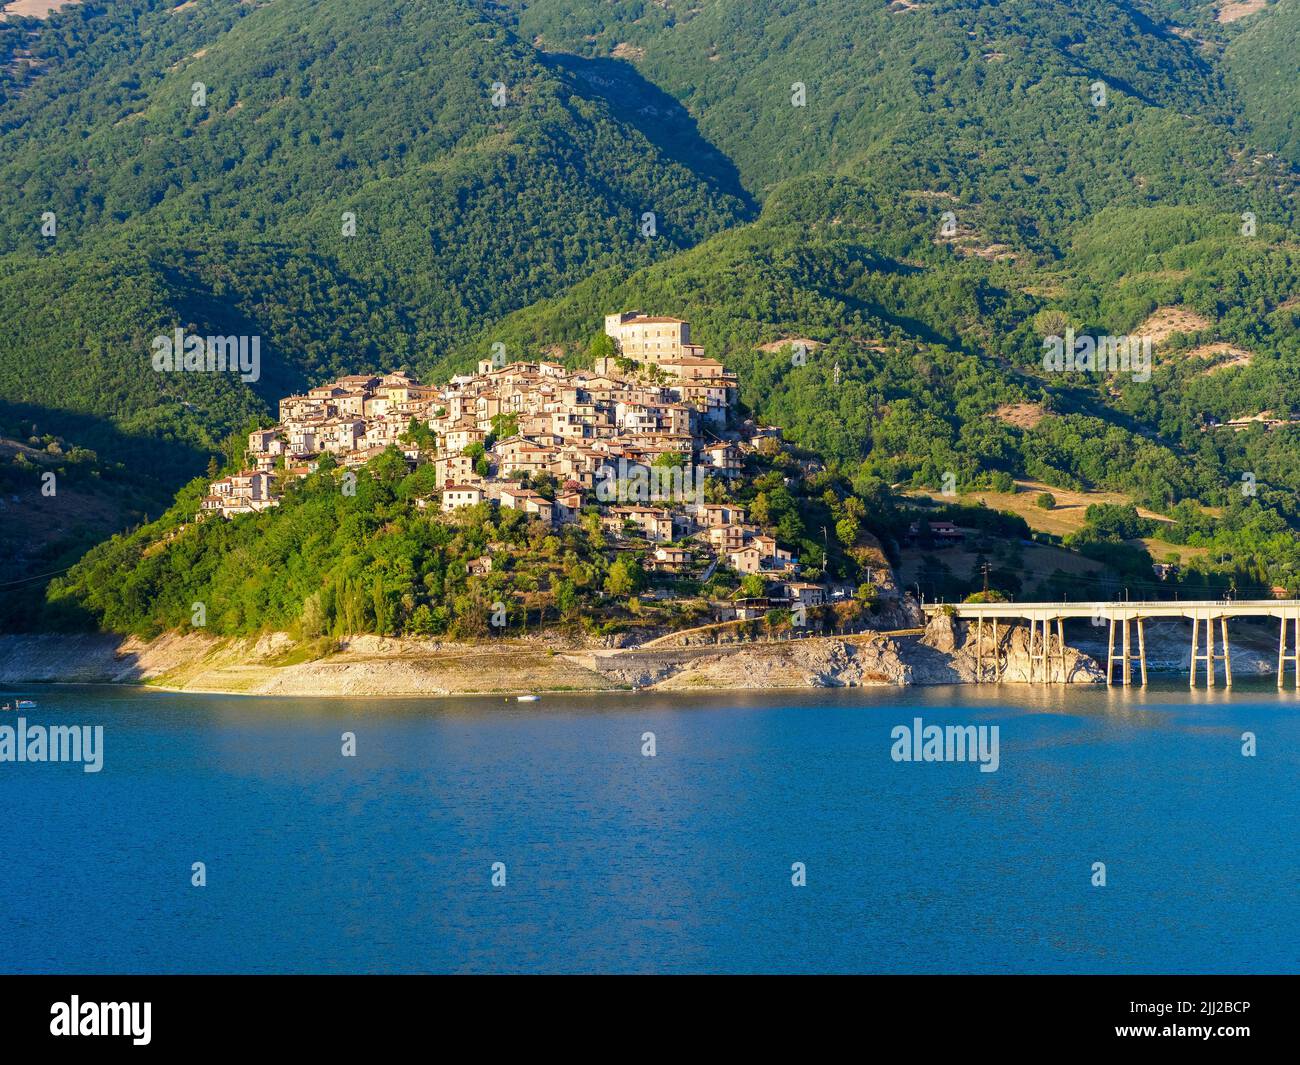 La petite ville de Castel di Tora et le lac de Turano - Rieti, Italie Banque D'Images